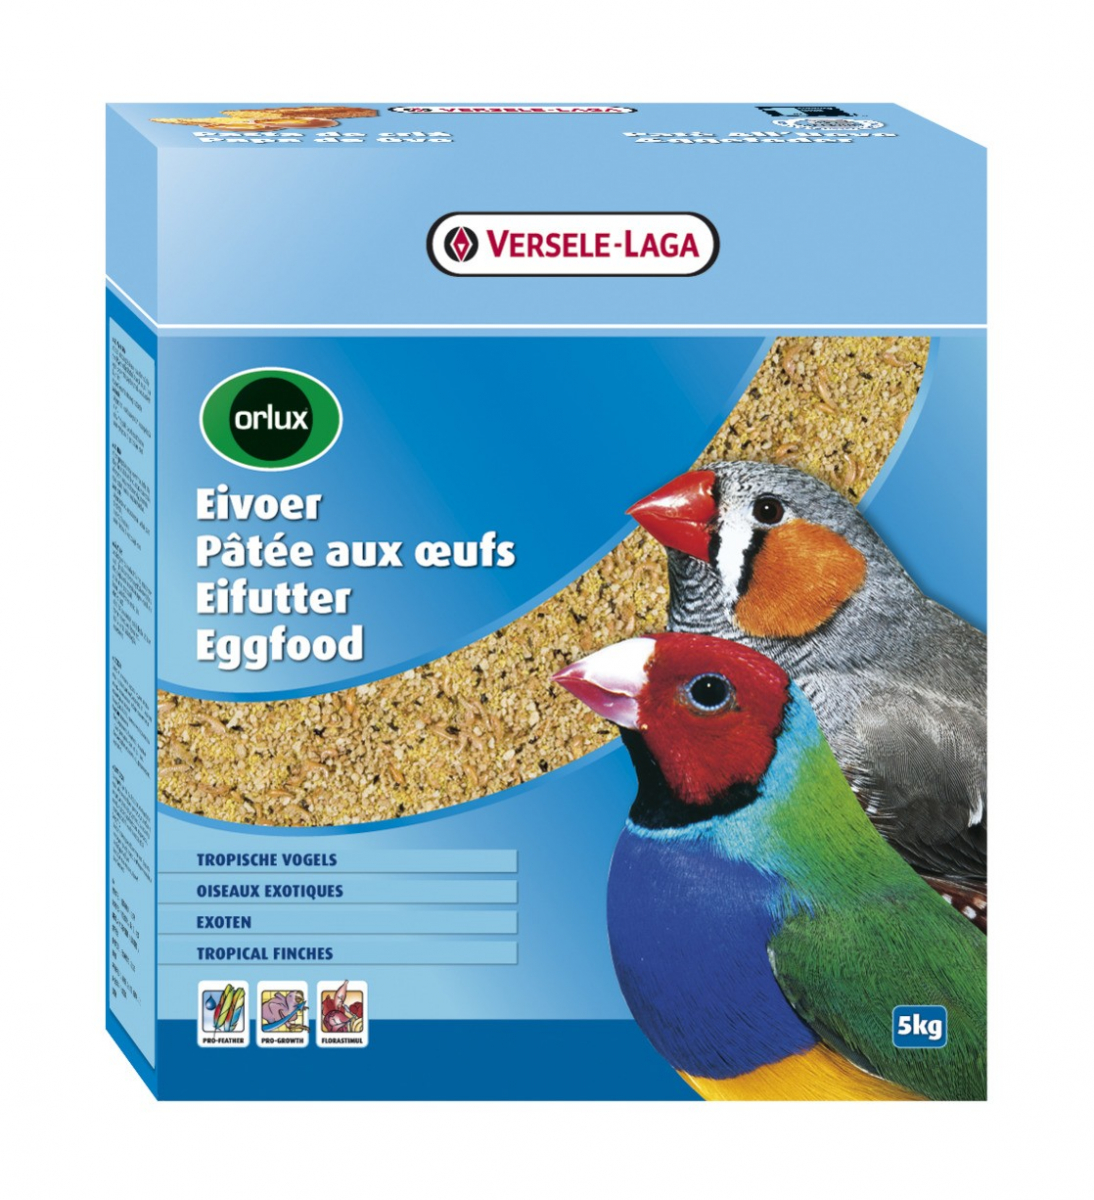 Pasta de cría para aves silvestres GOLD PATEE ORLUX VERSELE LAGA 5 kg.